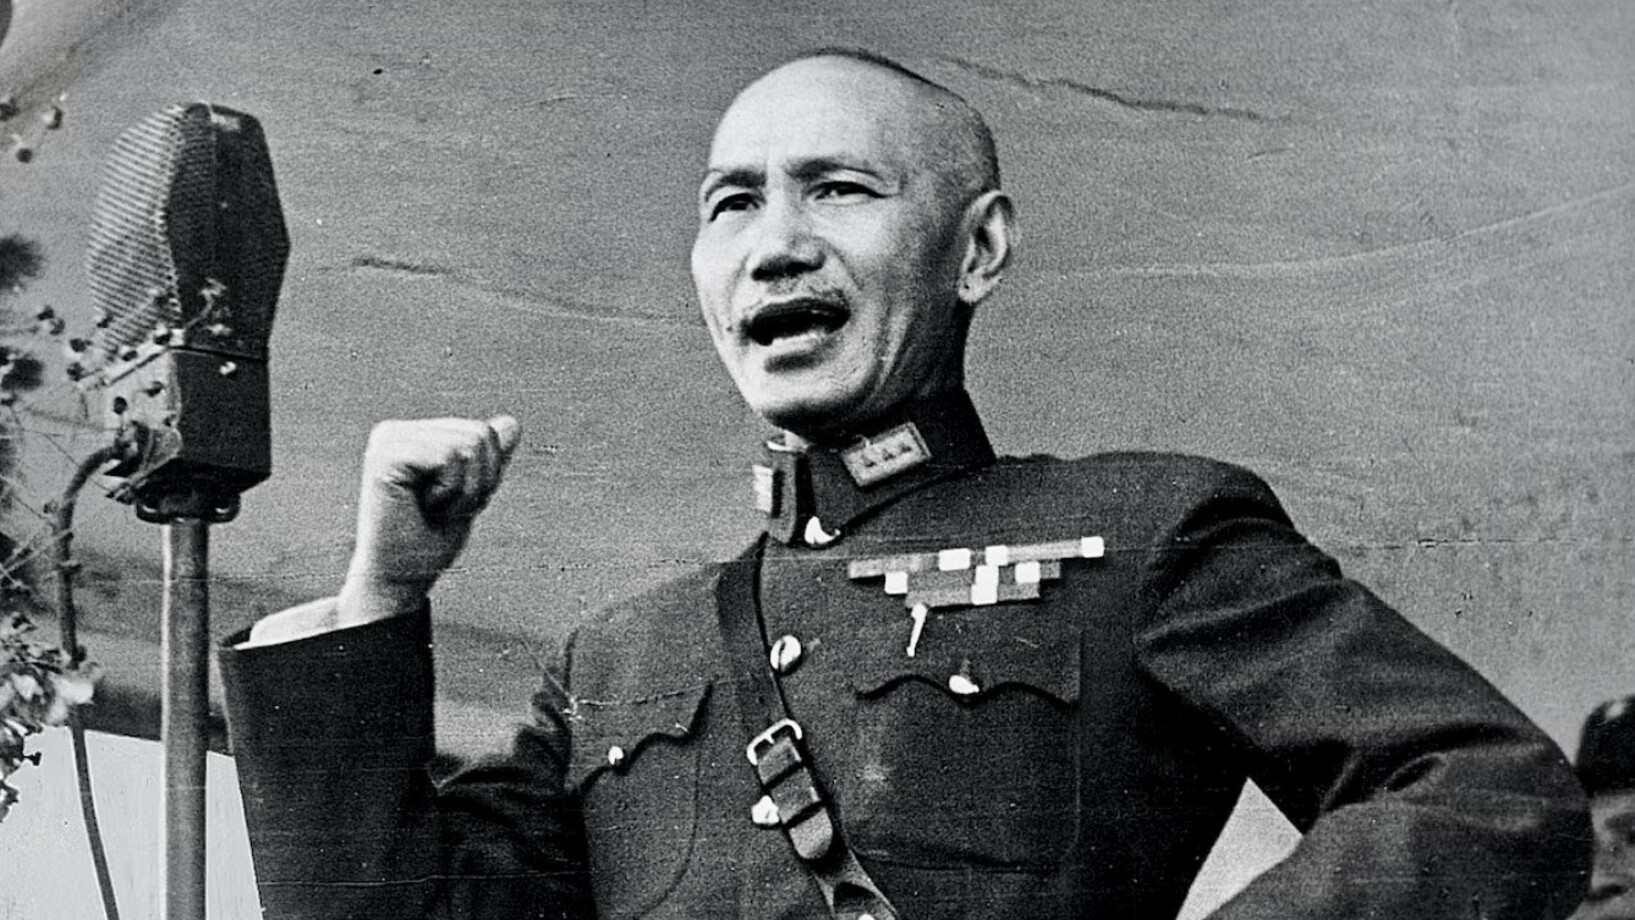 Chiang Kai-shek 